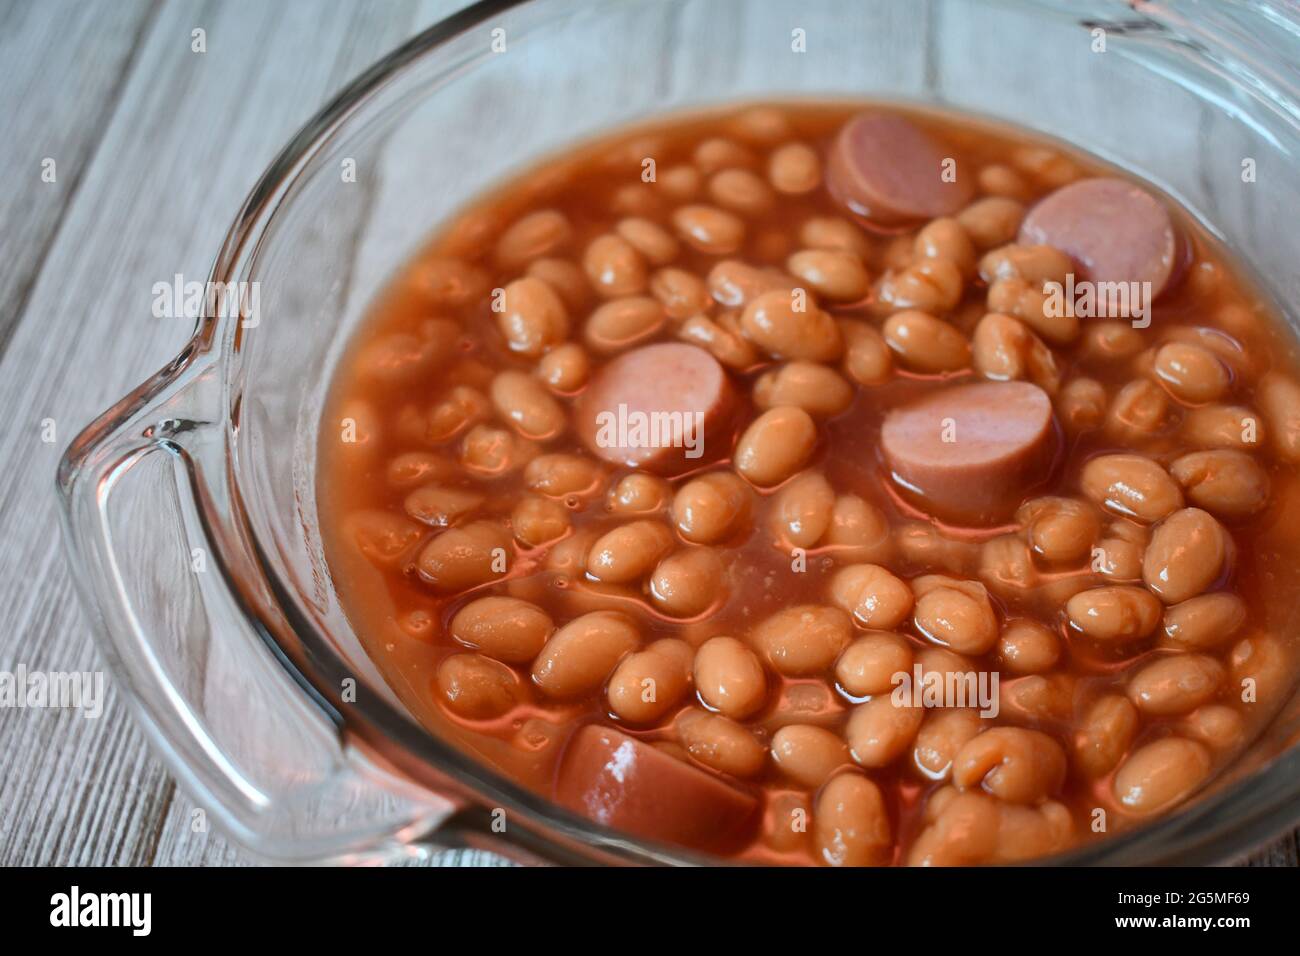 Franks und Bohnen oder Beanie-Weenies in einer klaren Glasschale auf einer Holzoberfläche Stockfoto